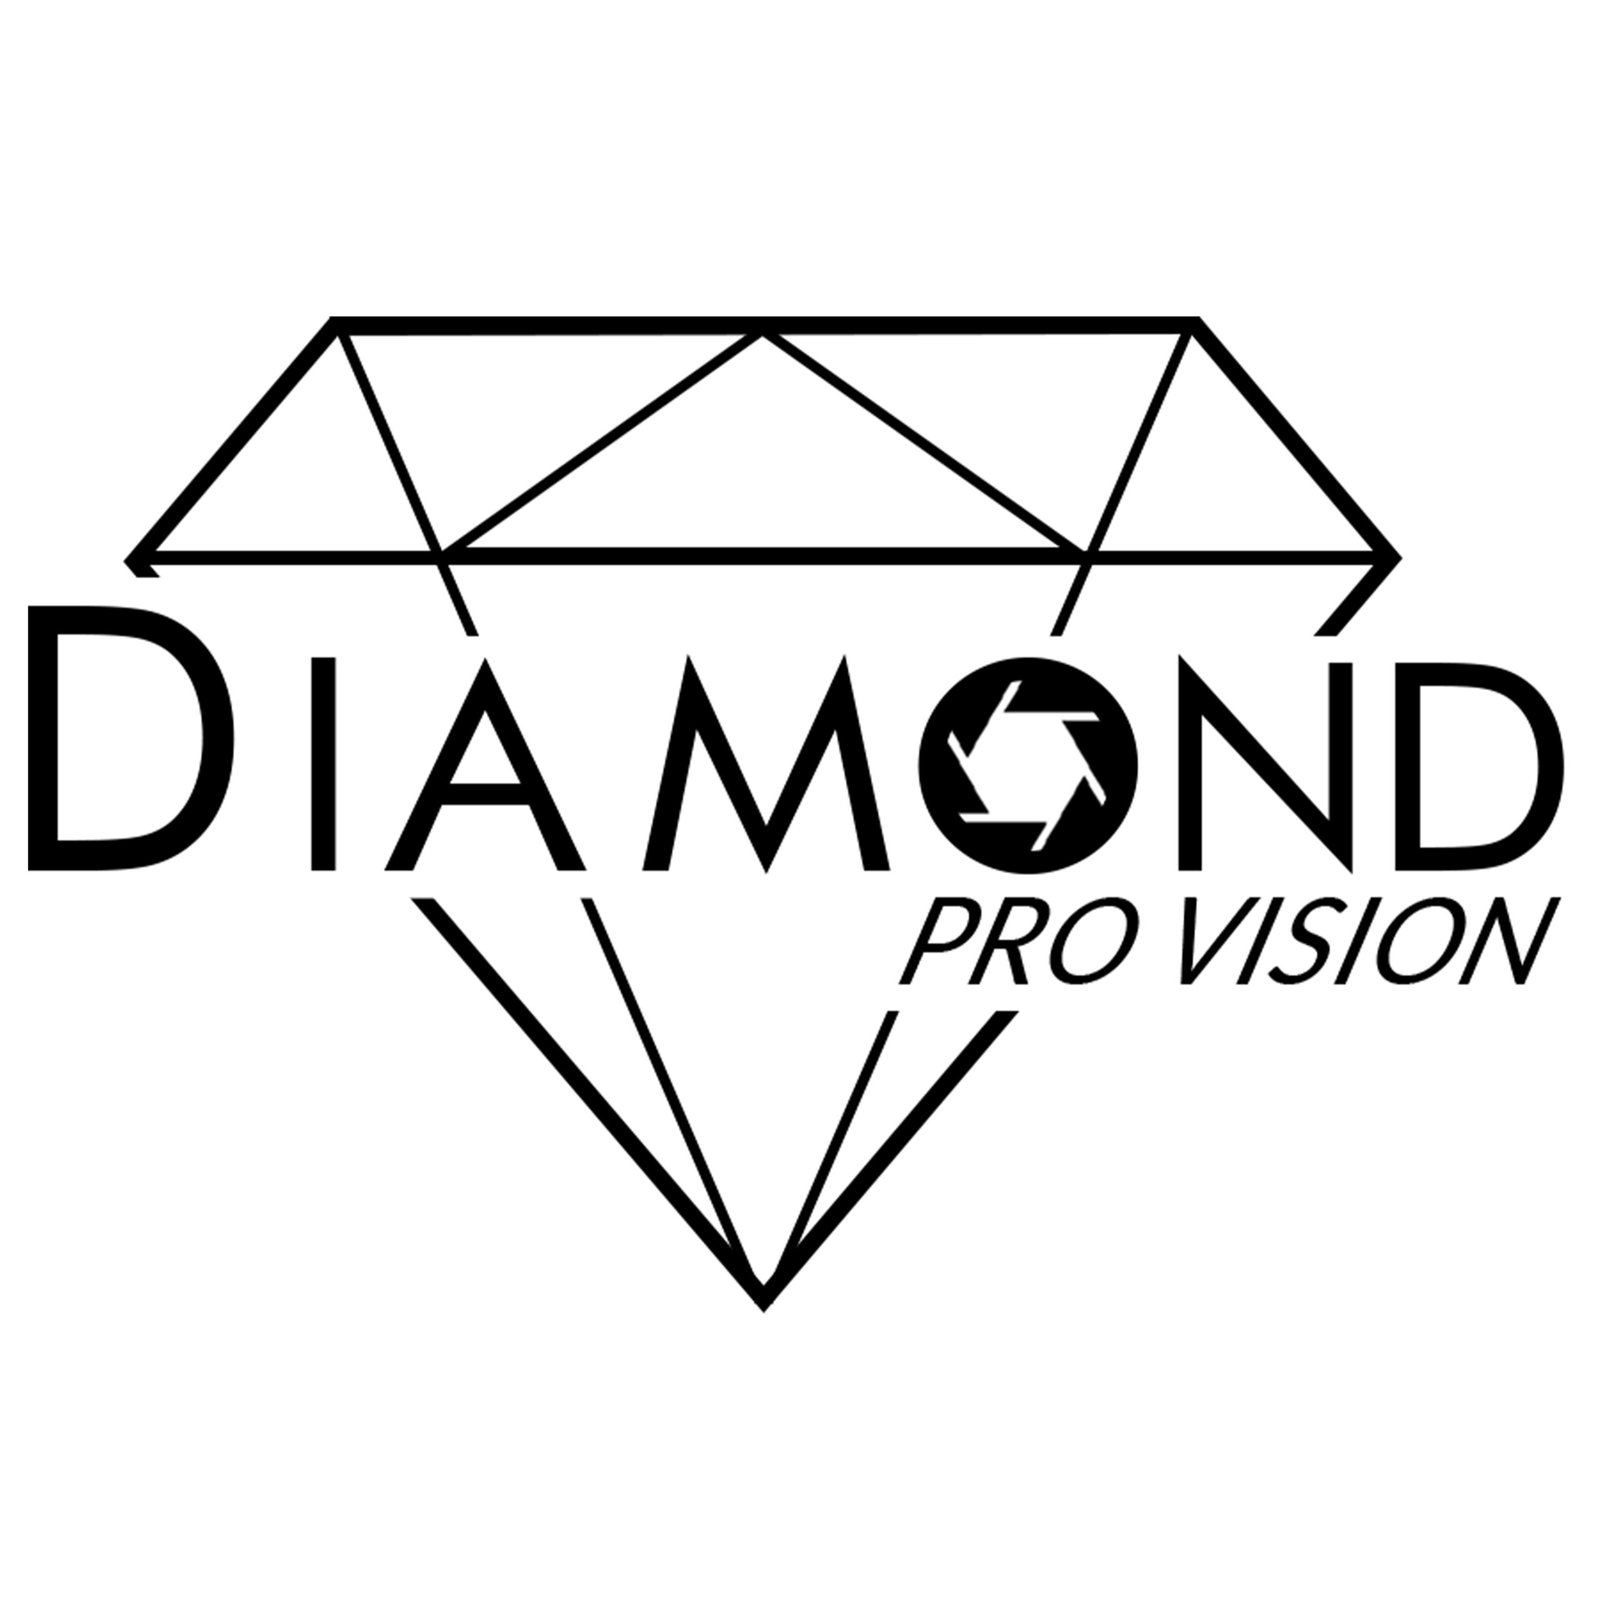 DiamondProVision Vendor